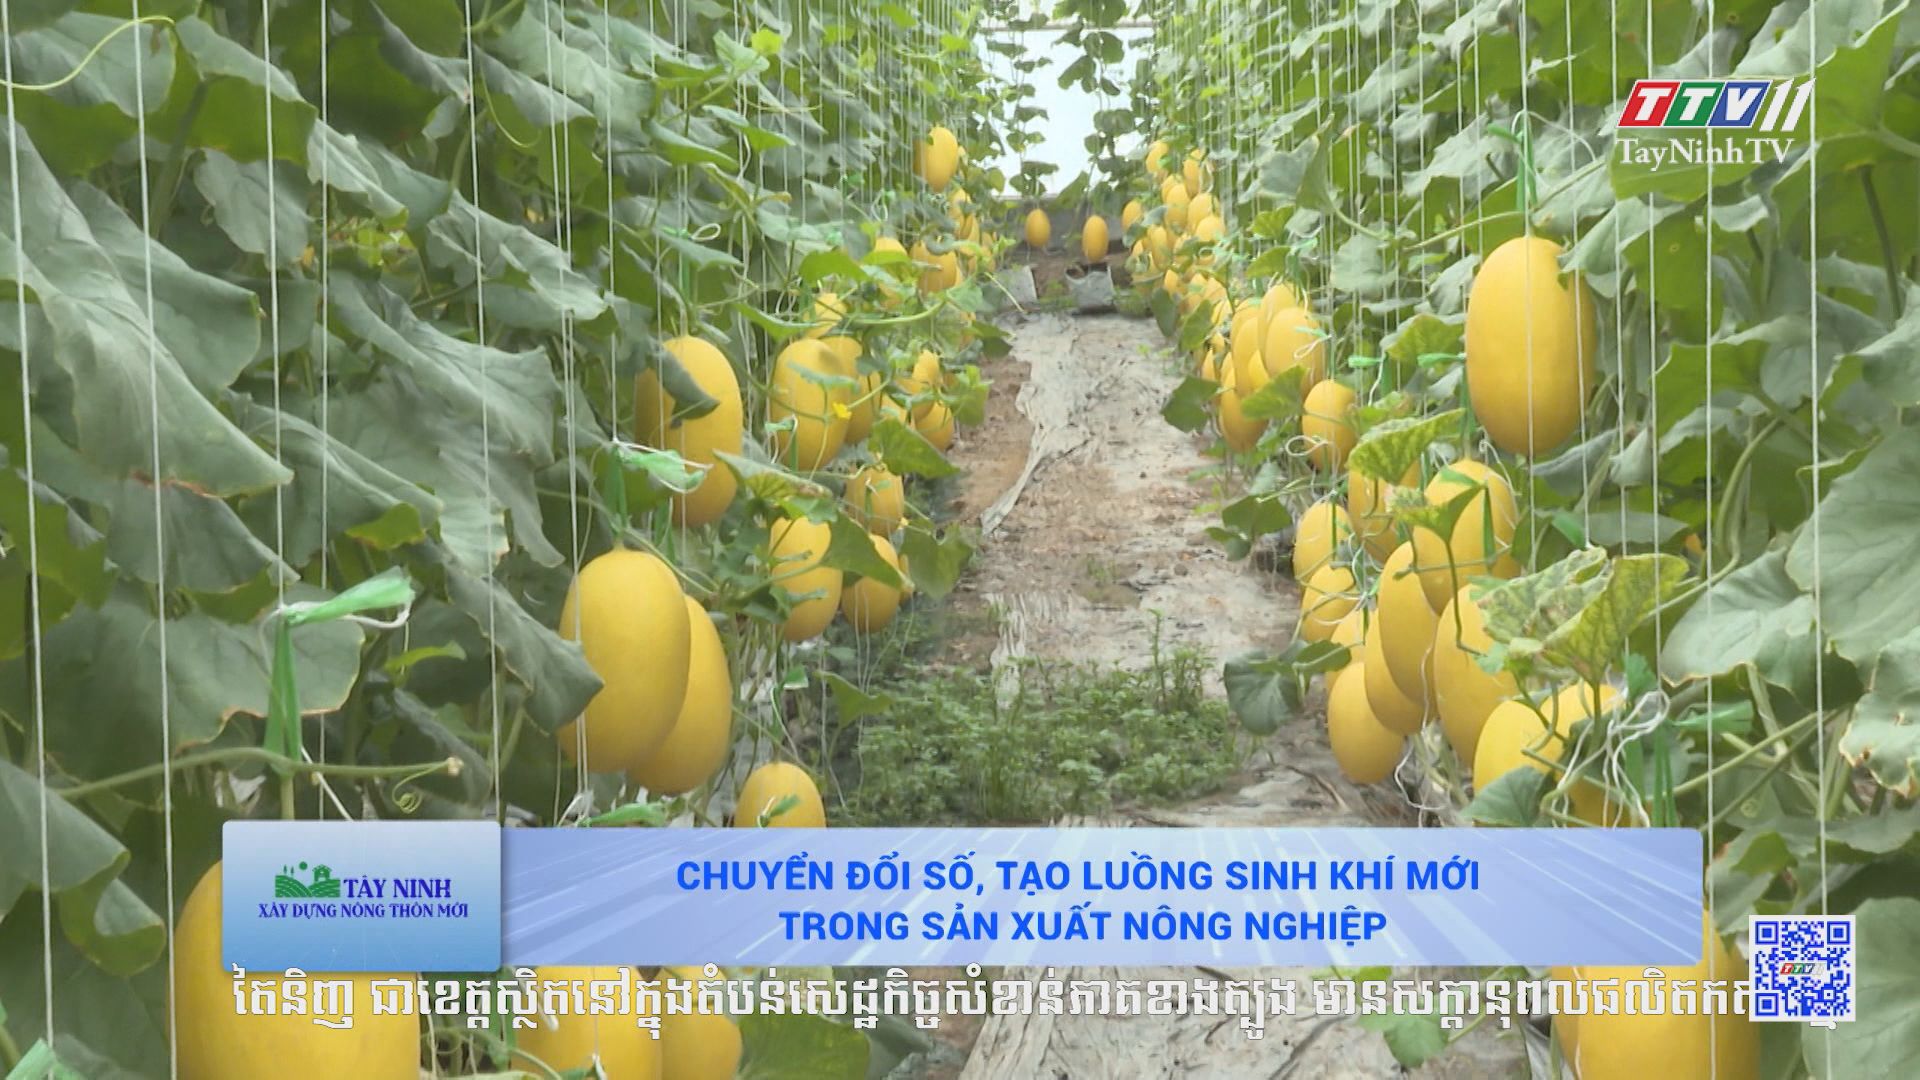 Chuyển đổi số, tạo luồng sinh khí mới trong sản xuất nông nghiệp | TÂY NINH XÂY DỰNG NÔNG THÔN MỚI | TayNinhTV